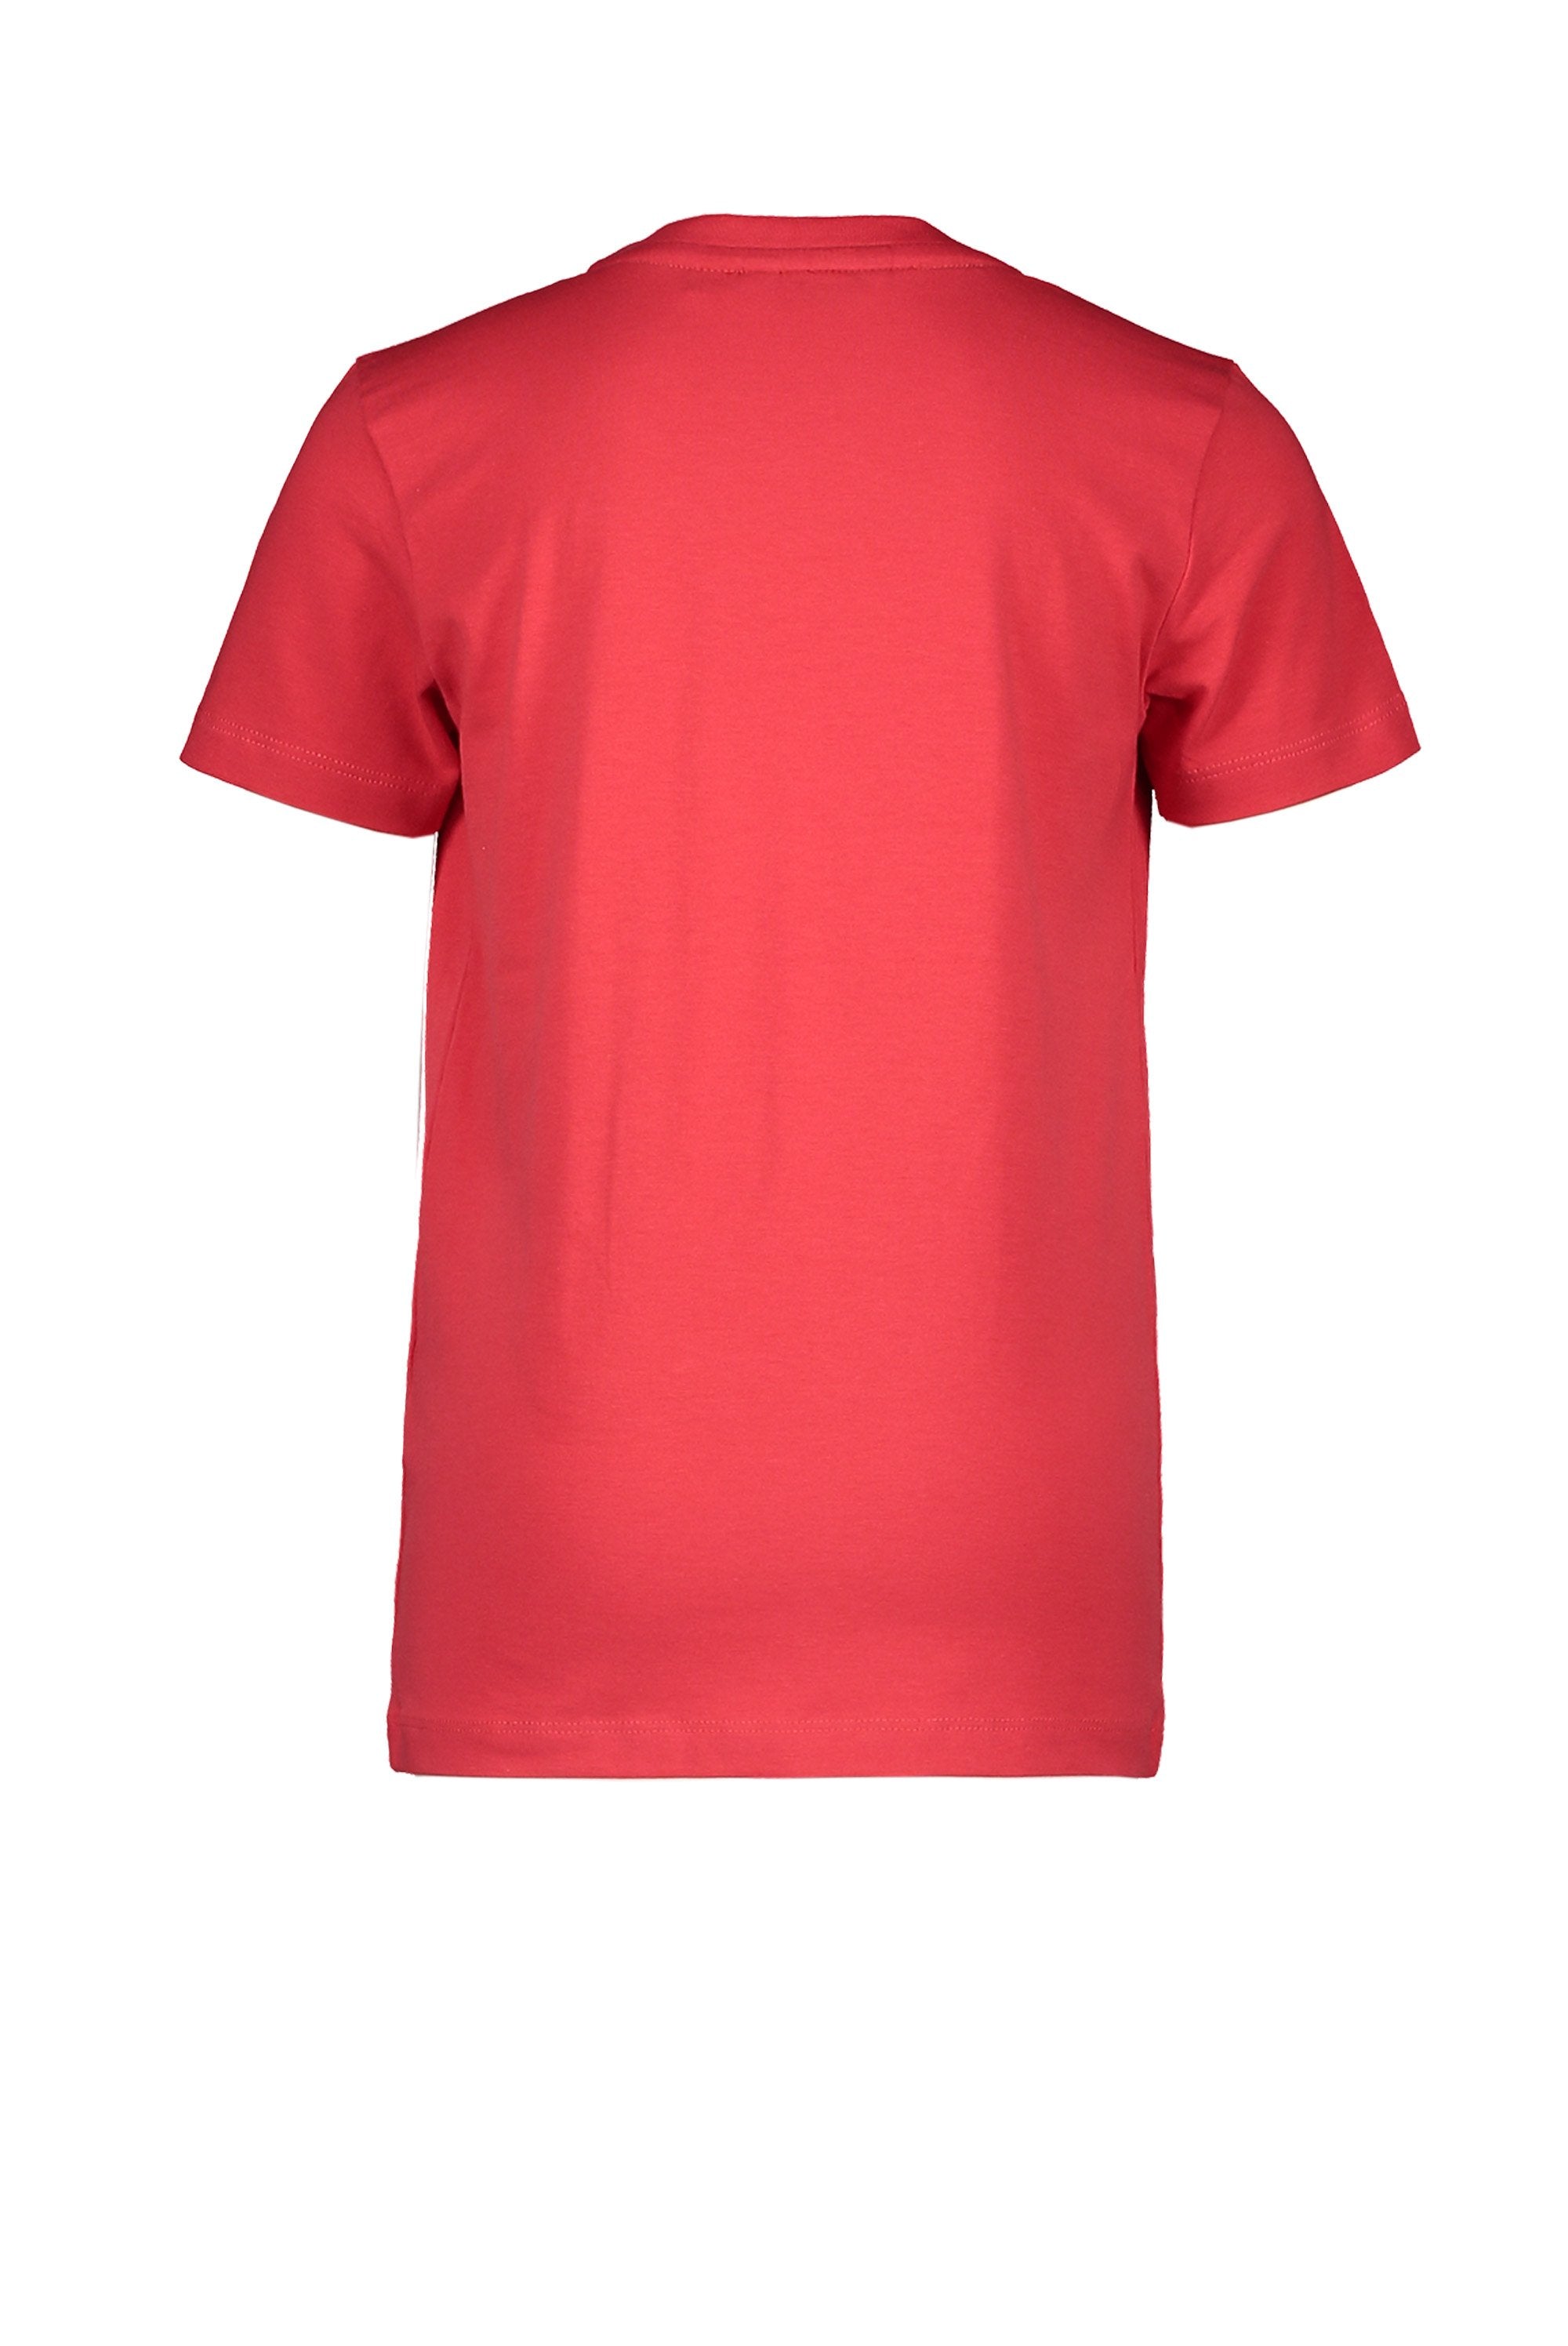 Jongens T-Shirt Chestprint van Moodstreet in de kleur Red in maat 122/128.